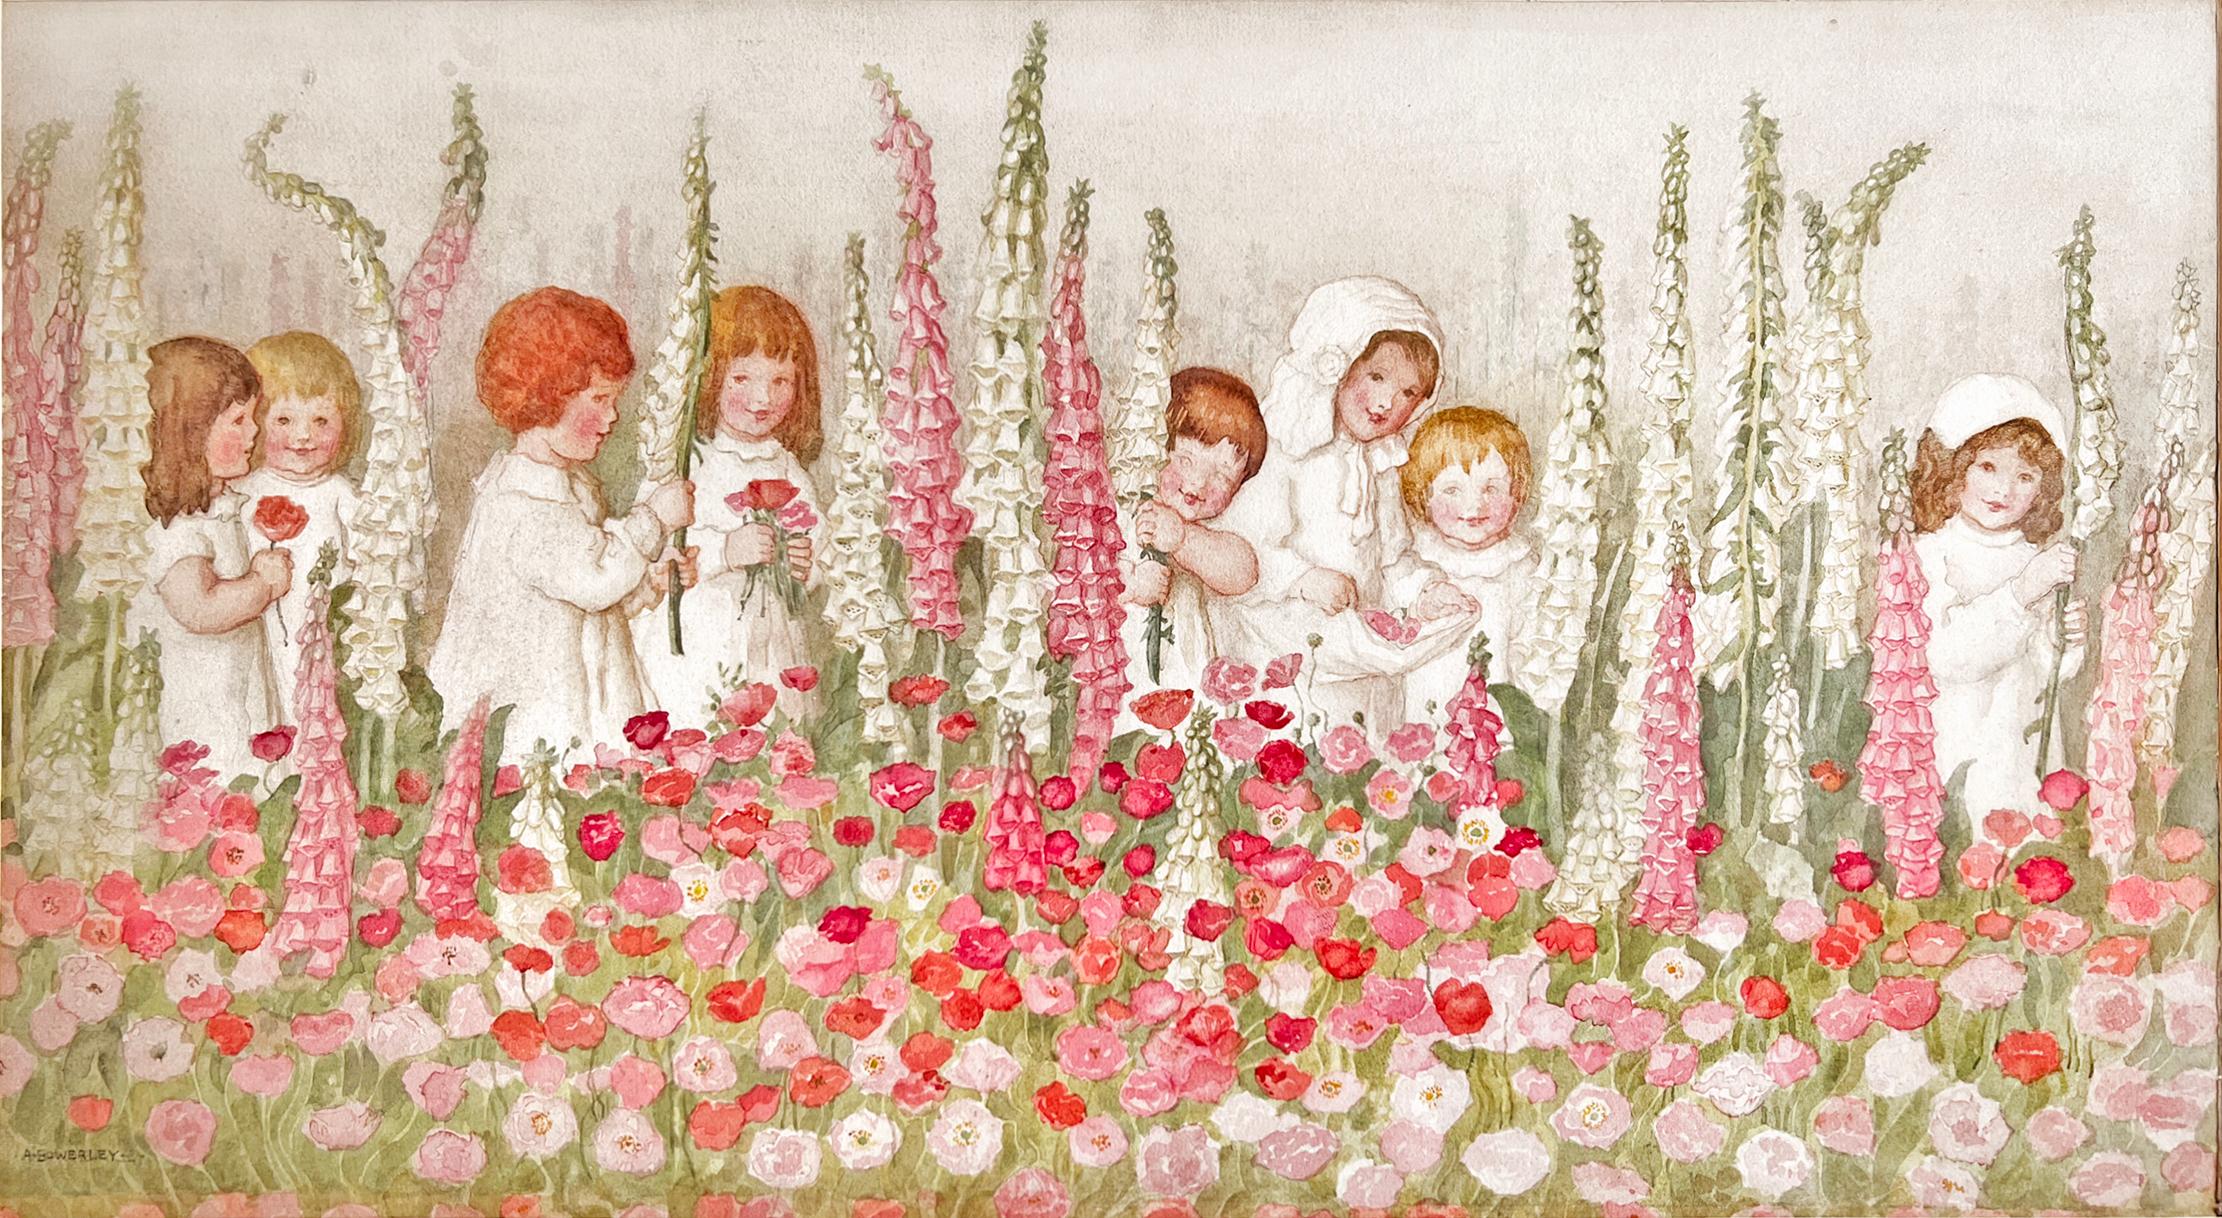 Children Amongst Foxgloves - Pink Flowers, Female Illustrator of The Golden Age